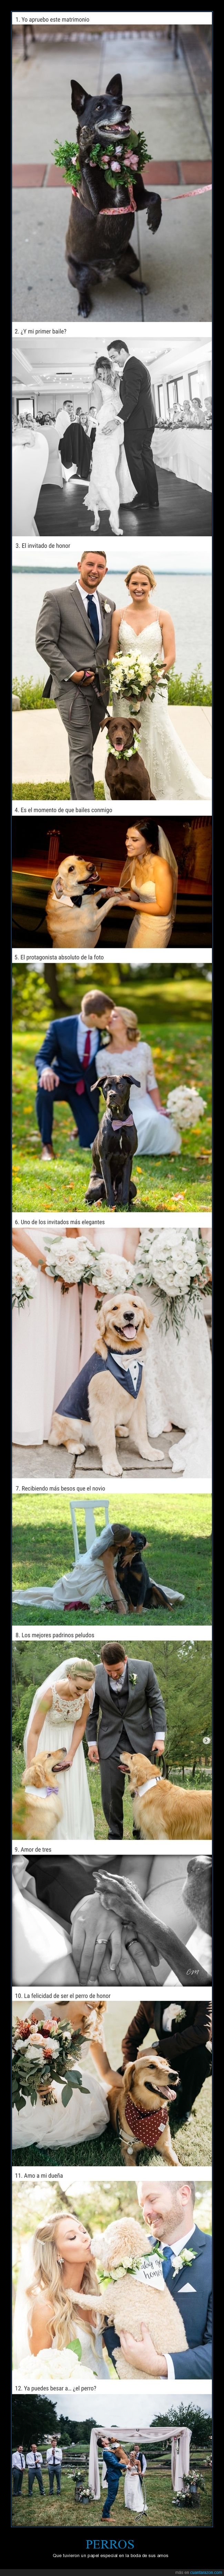 perros,bodas